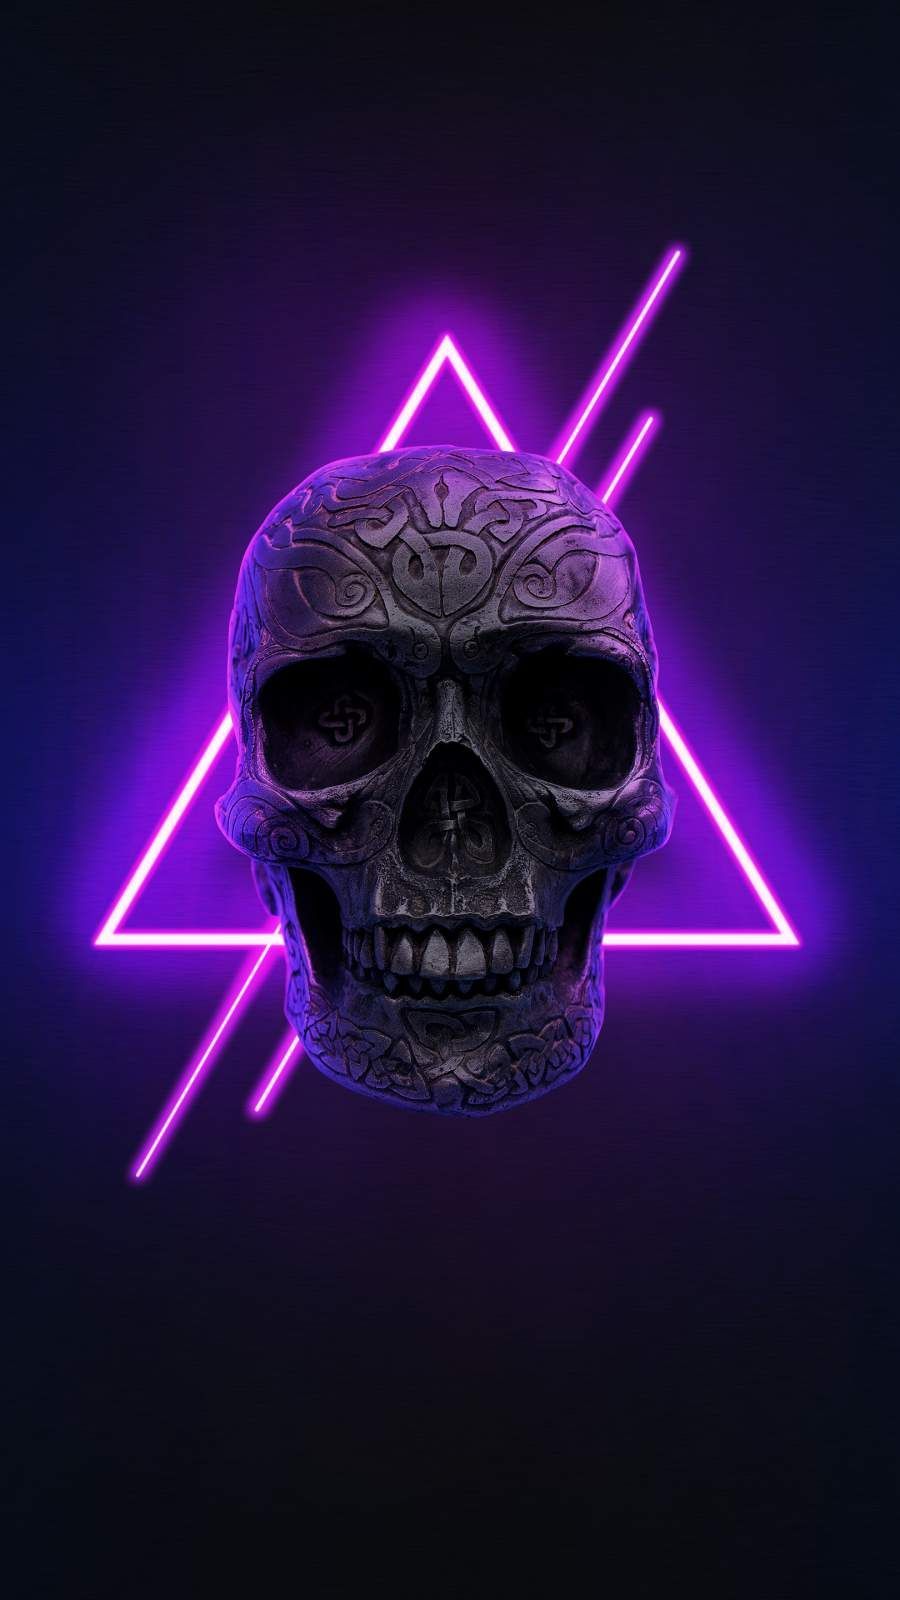 Neon Hintergrundbild 900x1600. Neon Skull iPhone Wallpaper. Skull wallpaper iphone, Skull wallpaper, Neon wallpaper